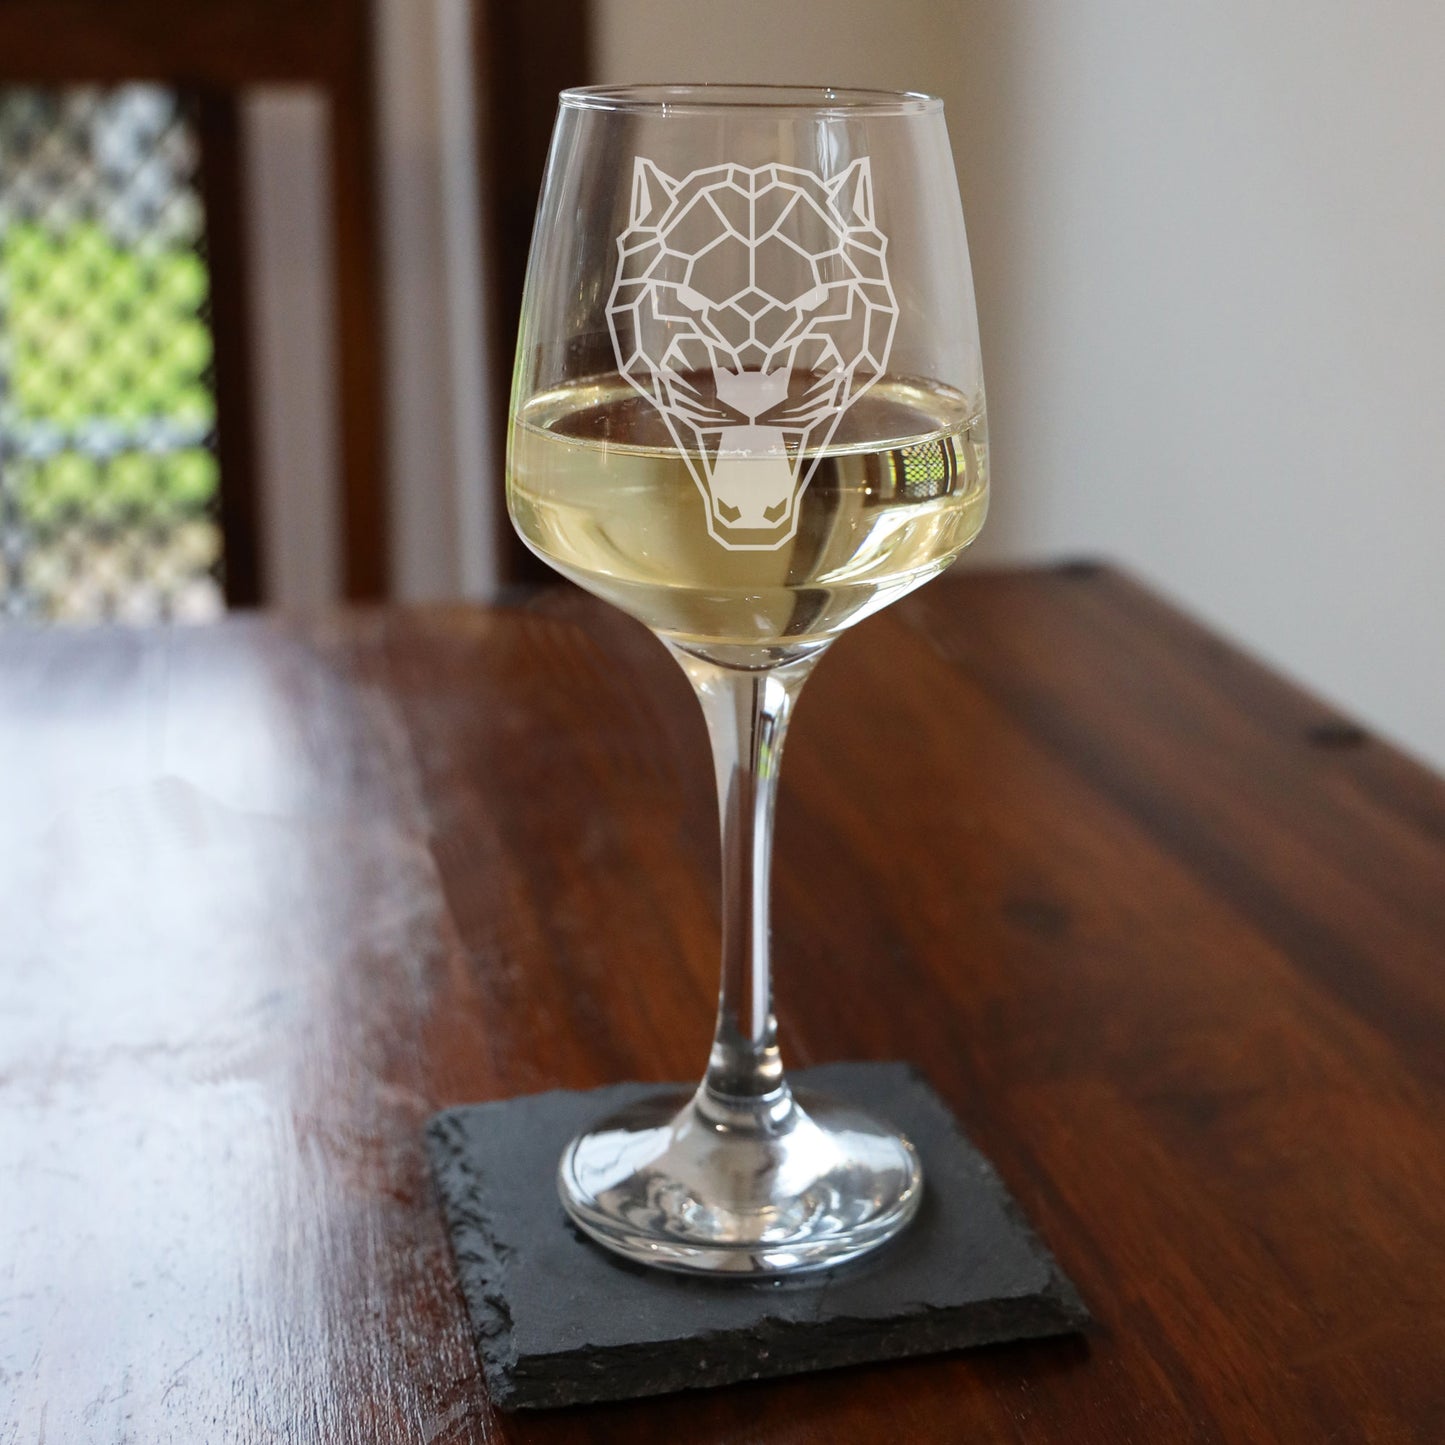 Jaguar Engraved Wine Glass  - Always Looking Good -   